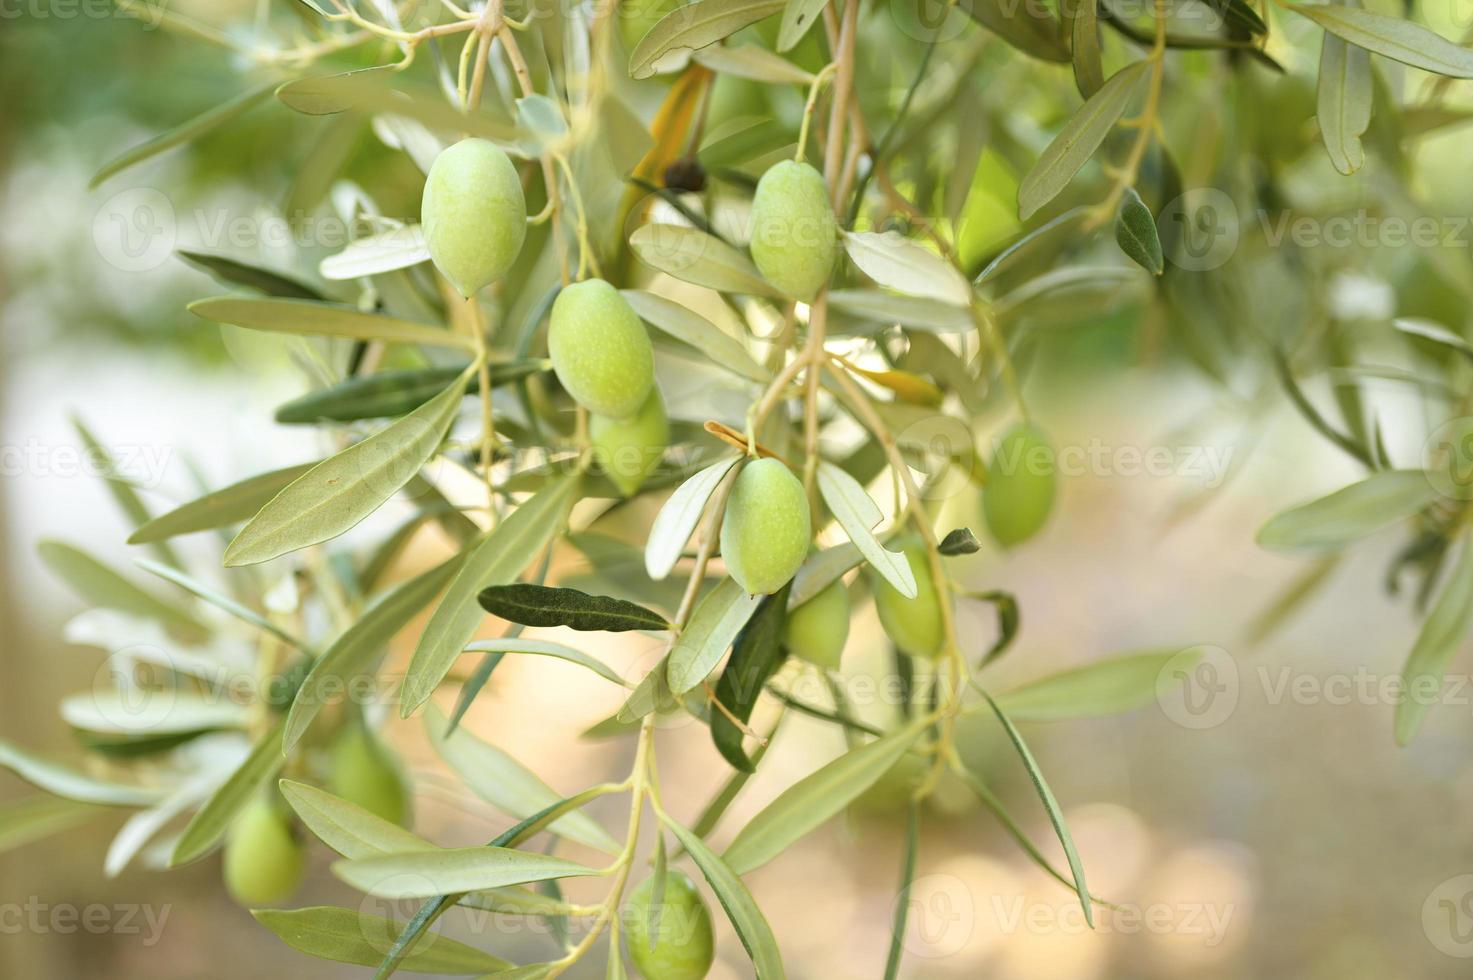 olive verdi che crescono su un ramo di ulivo in giardino foto